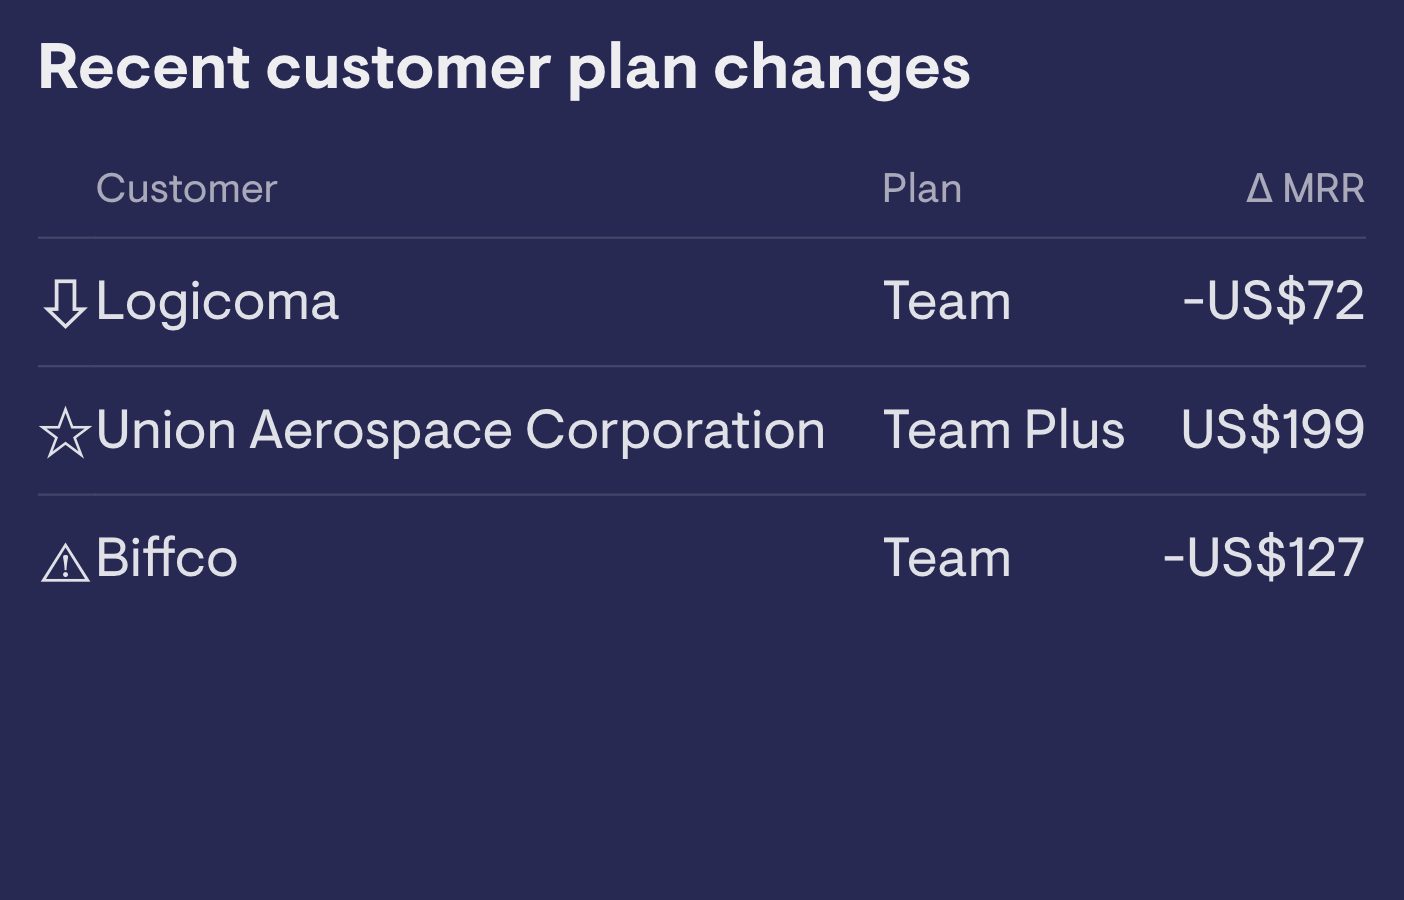 Customer plan changes